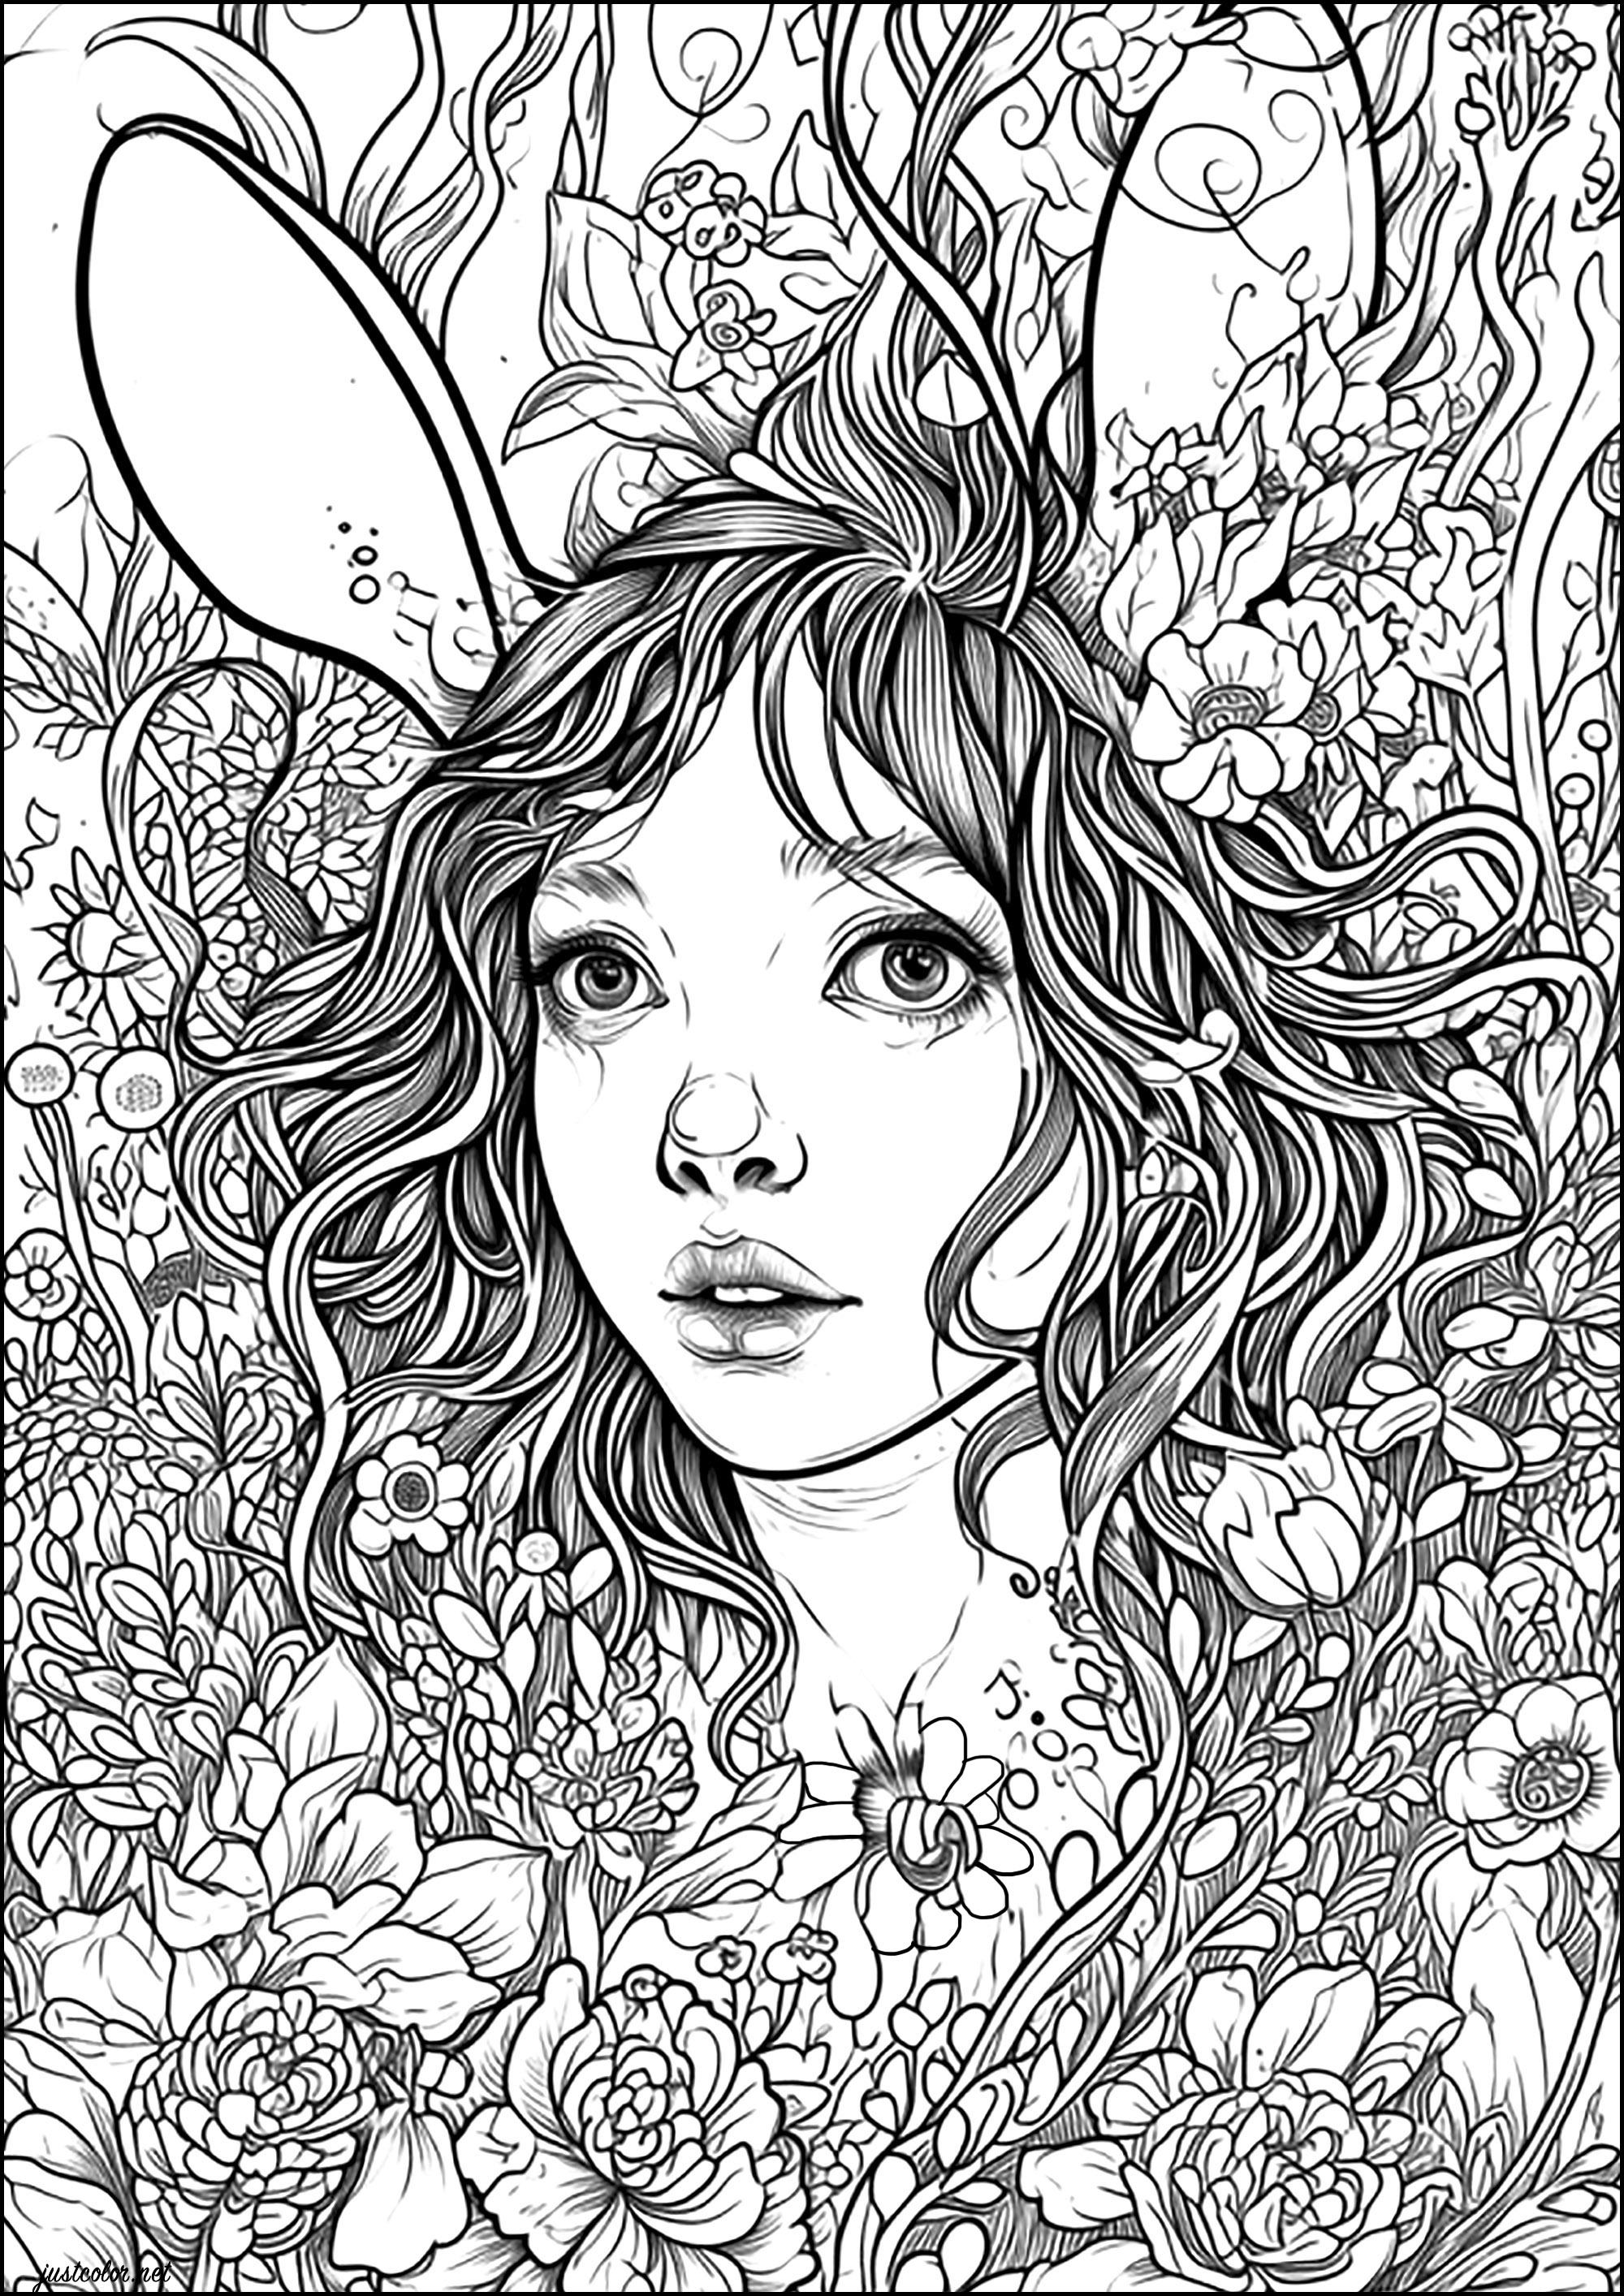 La femme lapin. Un sort transforme cette jeune femme en lapin ... Elle se cache au milieu des fleurs en attendant qui pourra la sauver